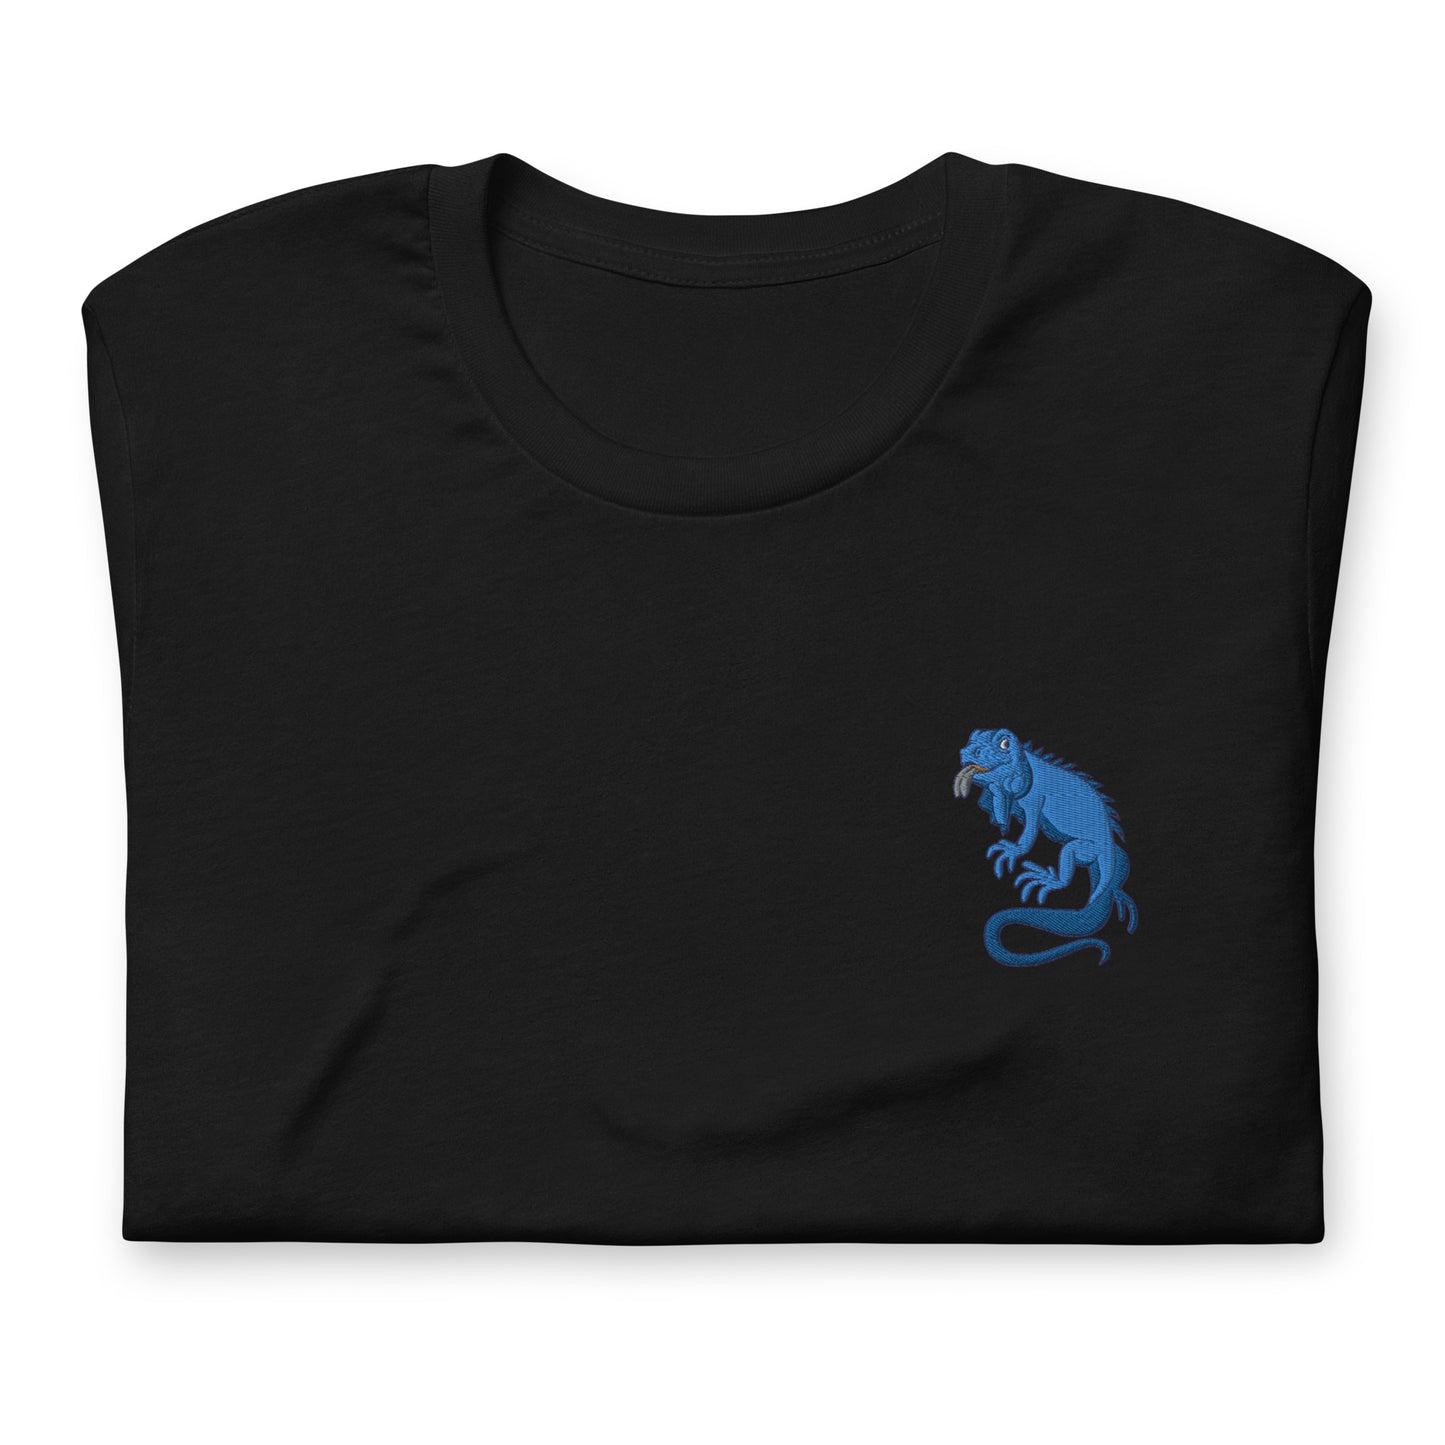 Buddy the Lizard Unisex t-shirt